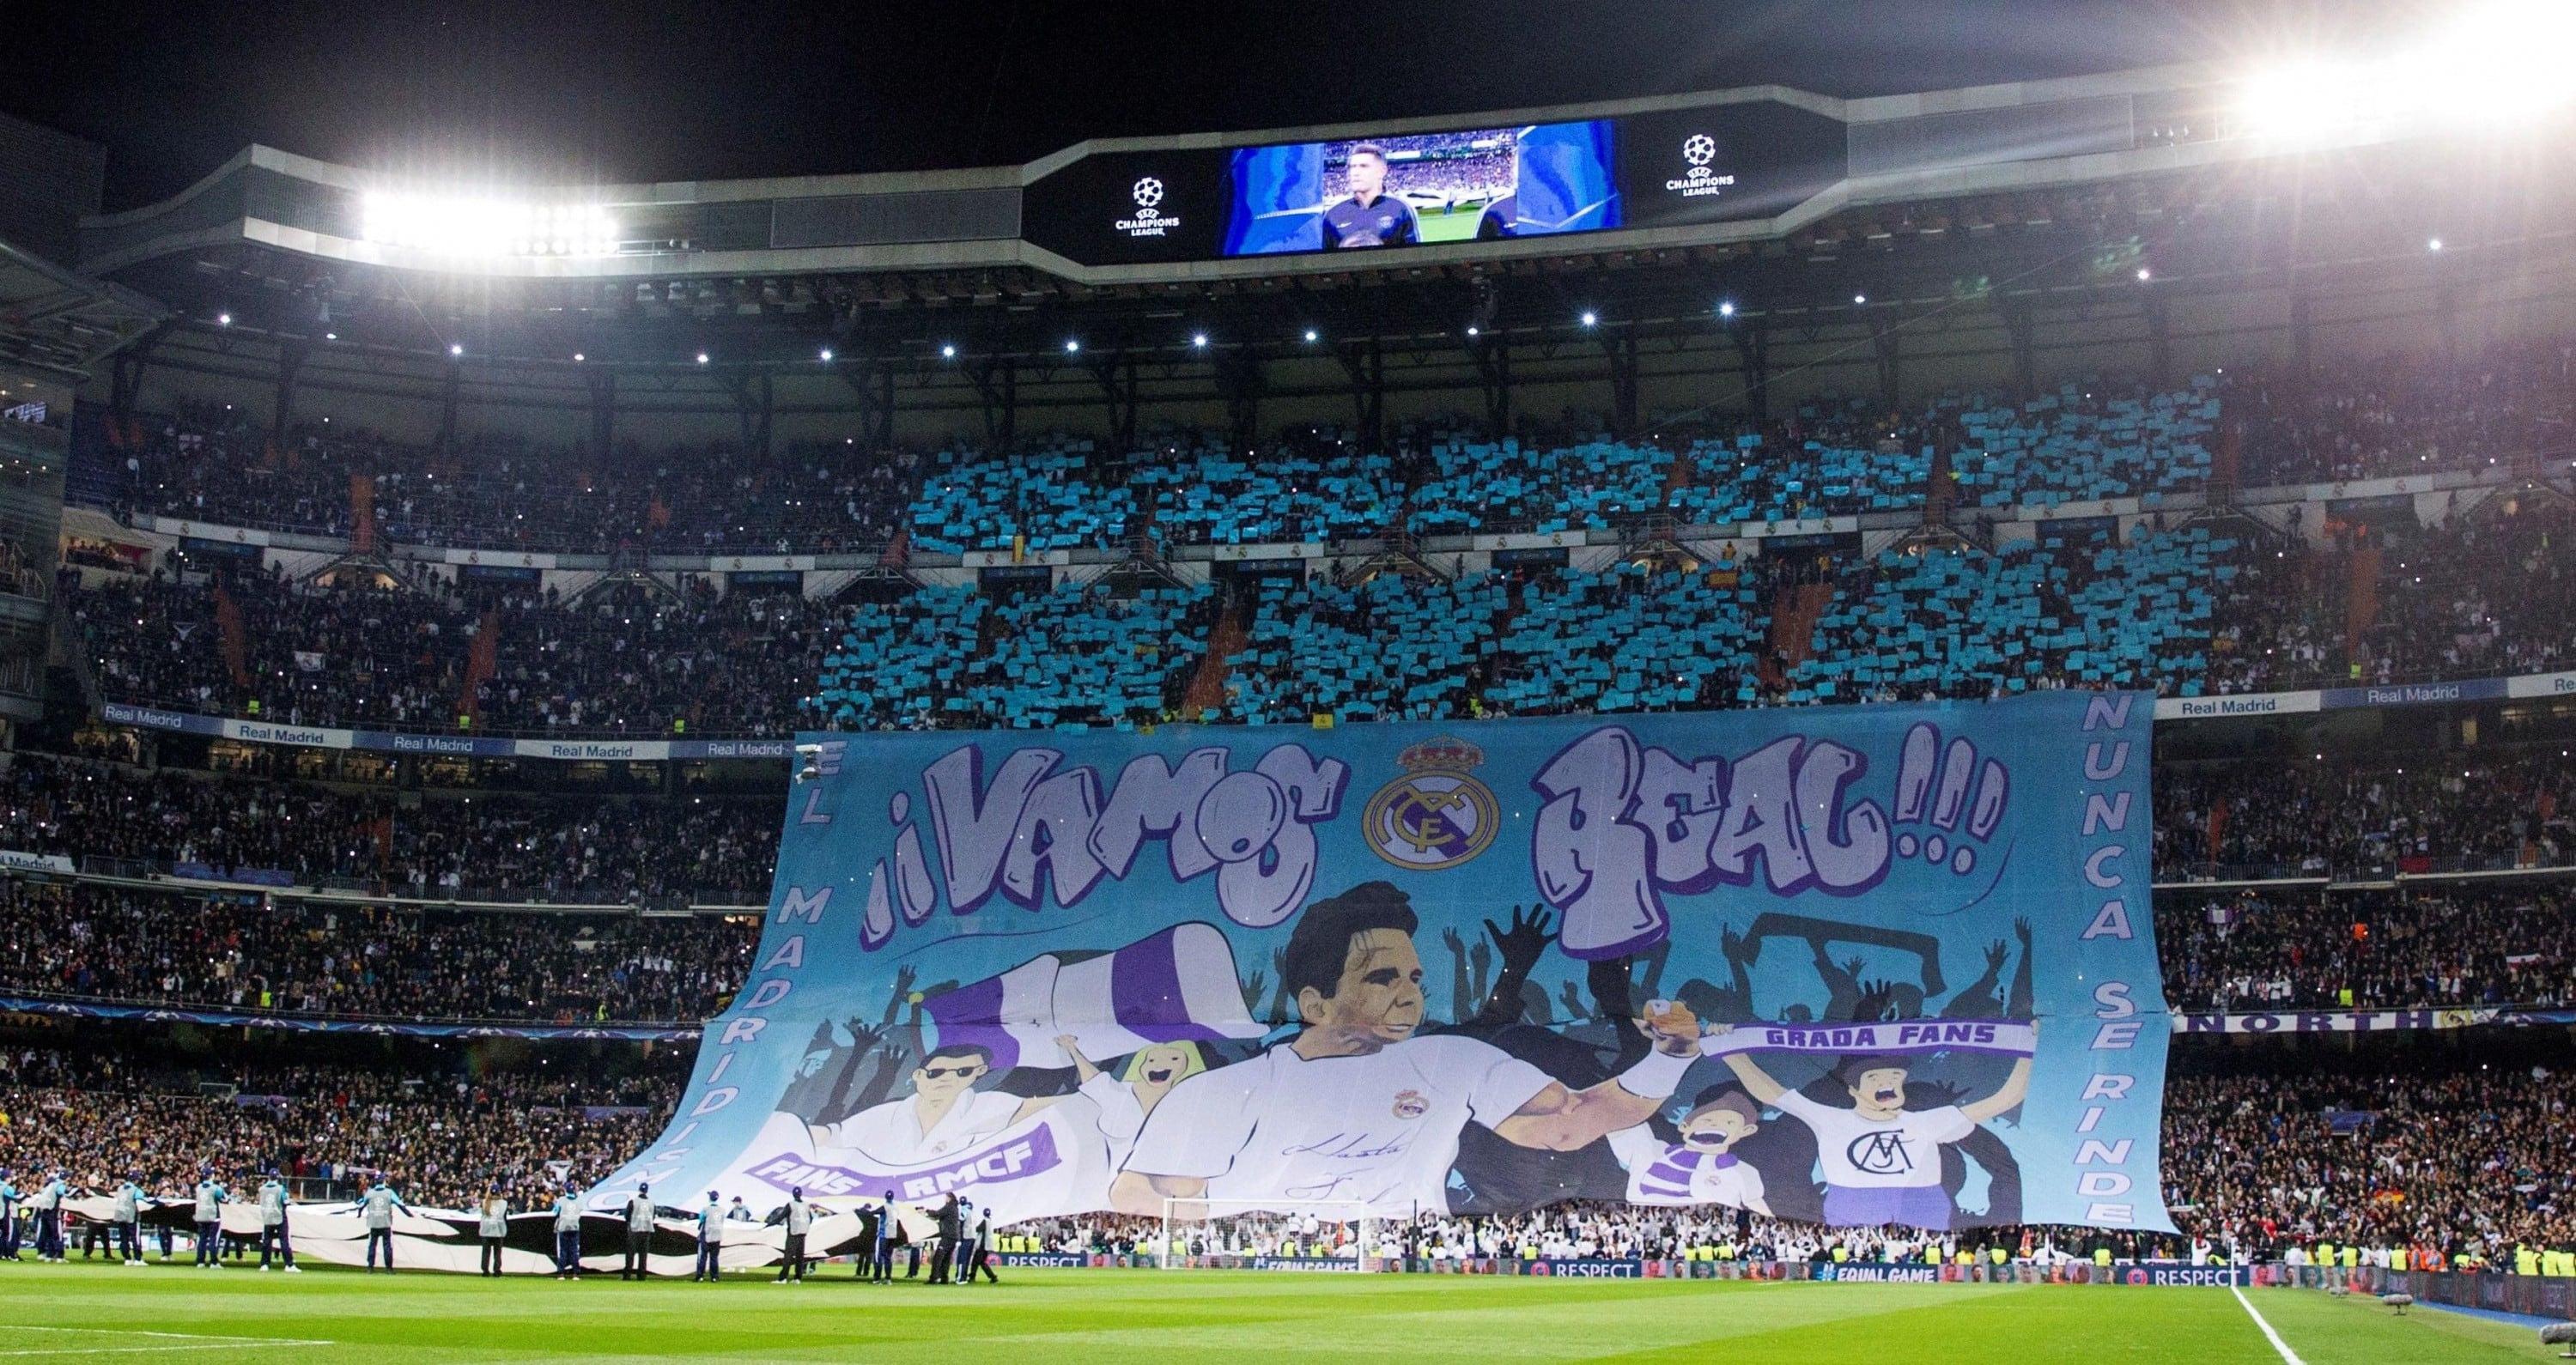 Real Madrid vs PSG: La enorme bandelora dedicada a Rafael Nadal en el Bernabéu